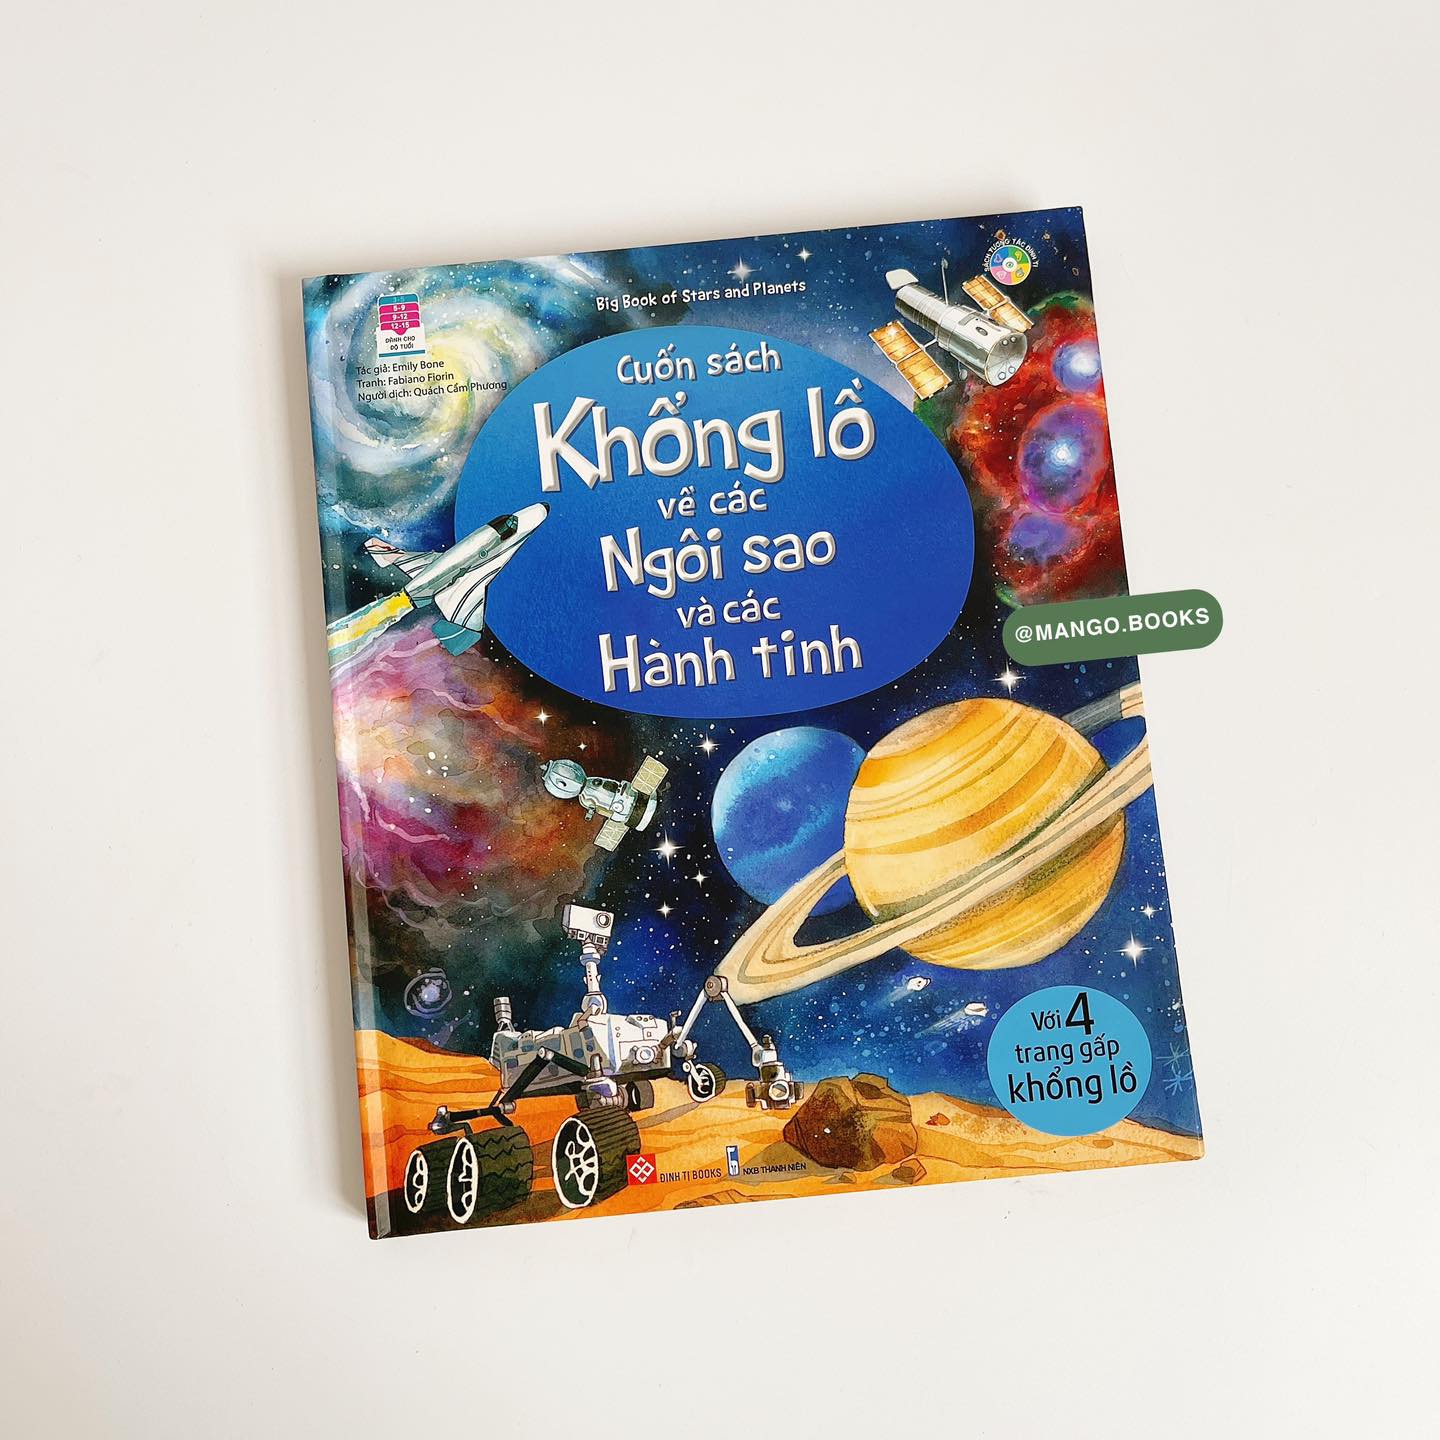 Sách Big book Cuốn sách khổng lồ về các ngôi sao và các hành tinh